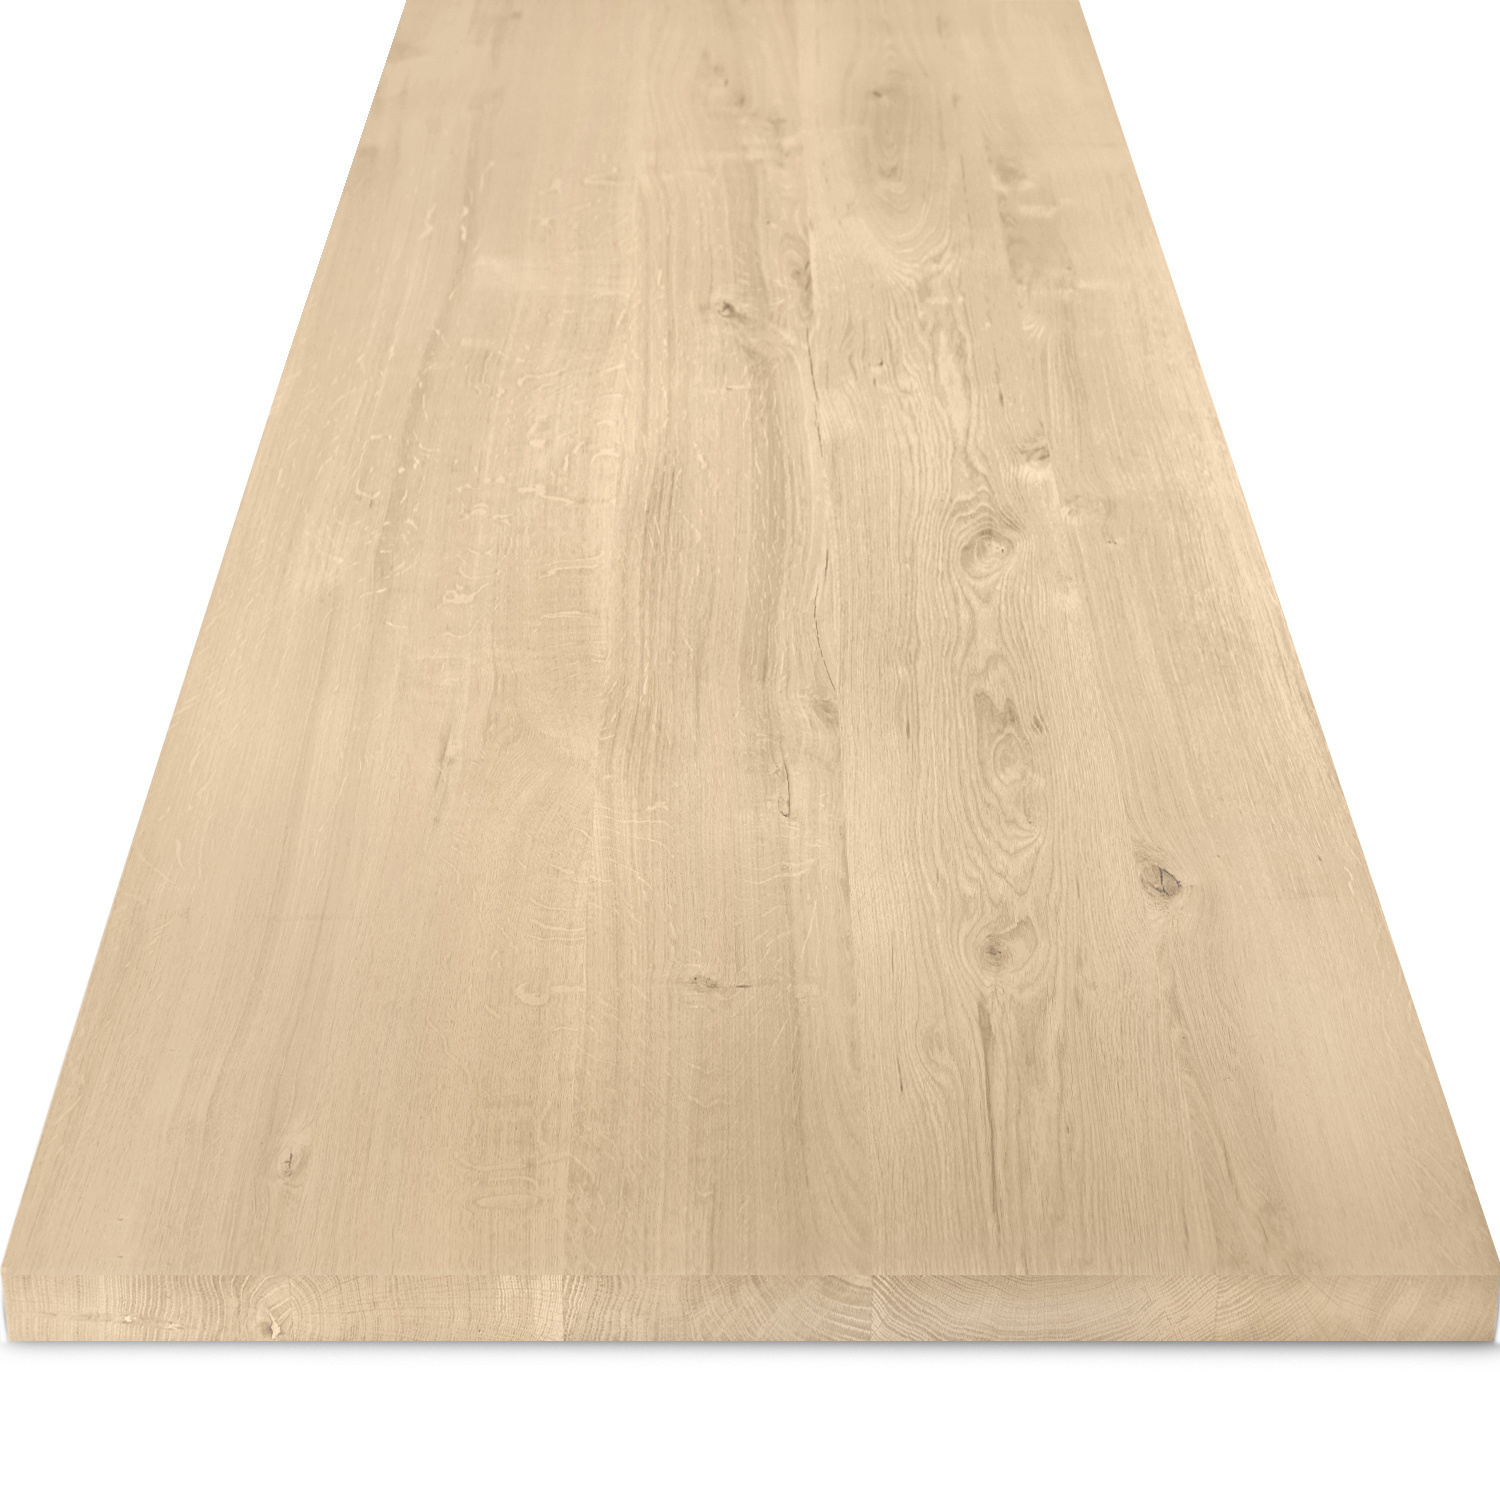  Tischplatte Eiche - 4 cm dick (1-Schicht) - Breite Lamellen (10 - 12 cm breit) - Eichenholz rustikal - verleimt & künstlich getrocknet (HF 8-12%) - verschiedene Größen